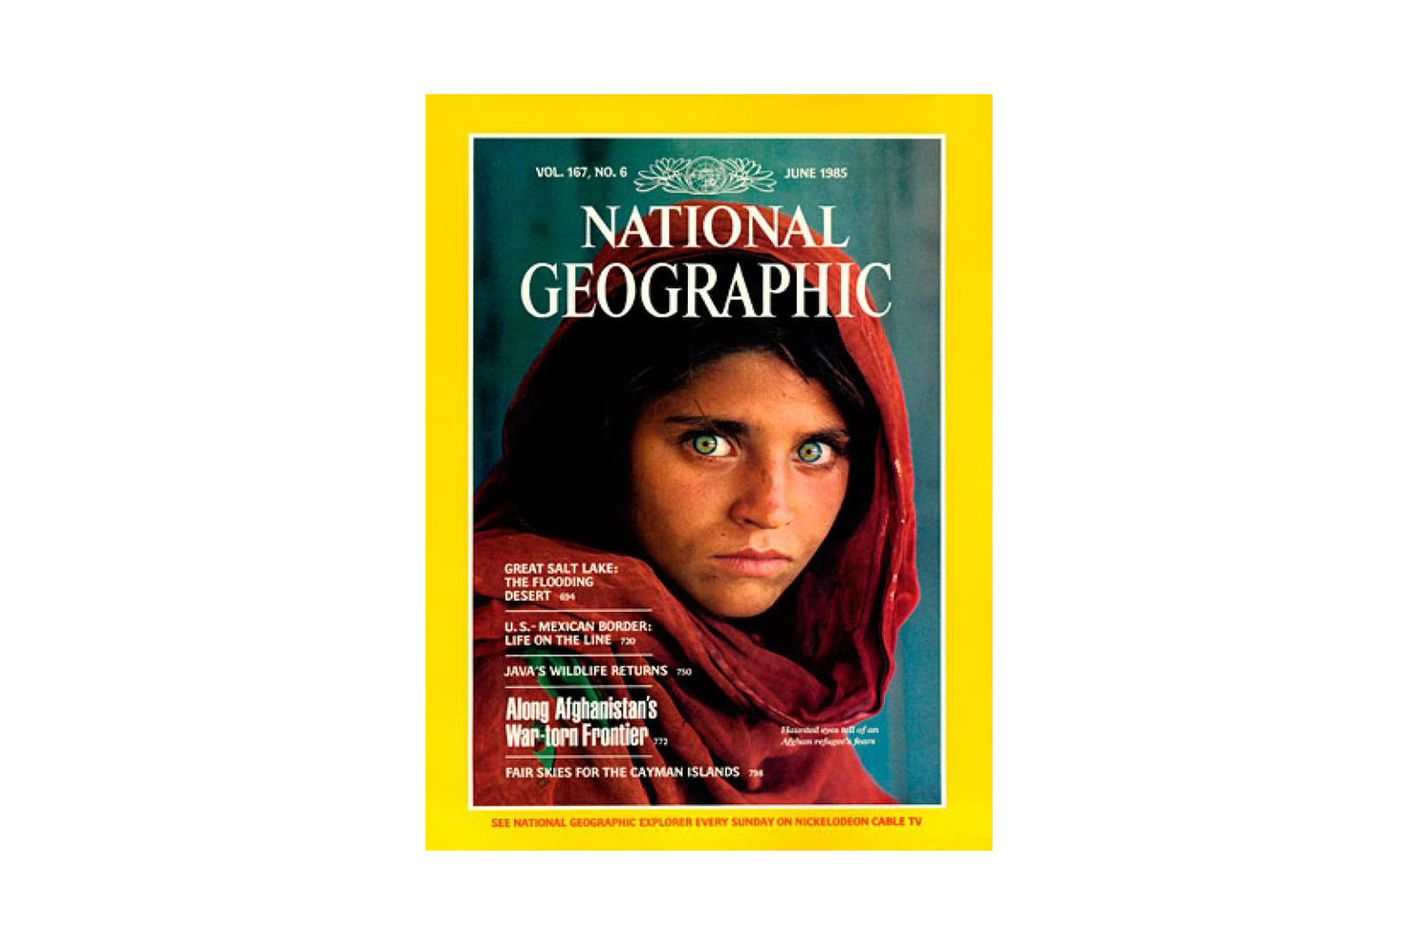 national geographic magazine layout